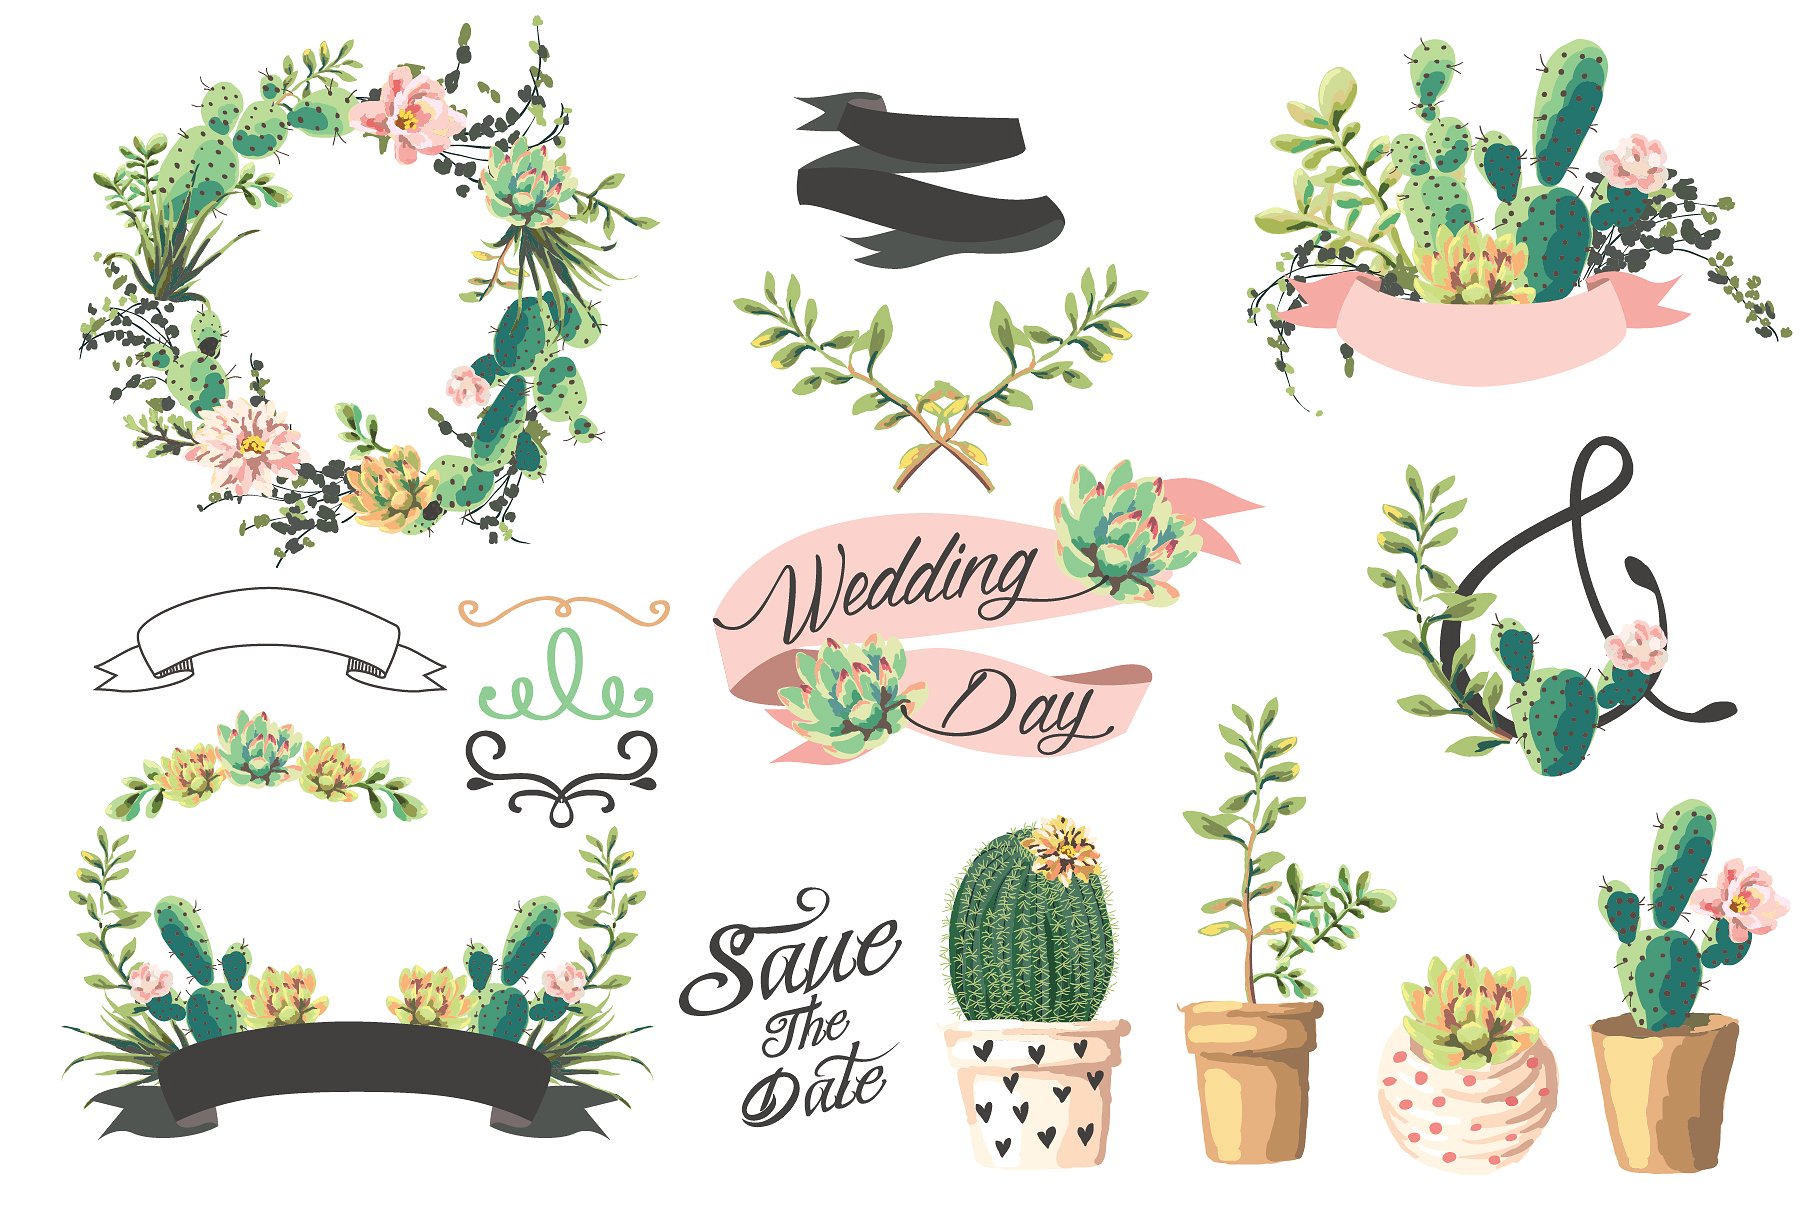 手绘水彩仙人掌设计素材Wedding graphic set